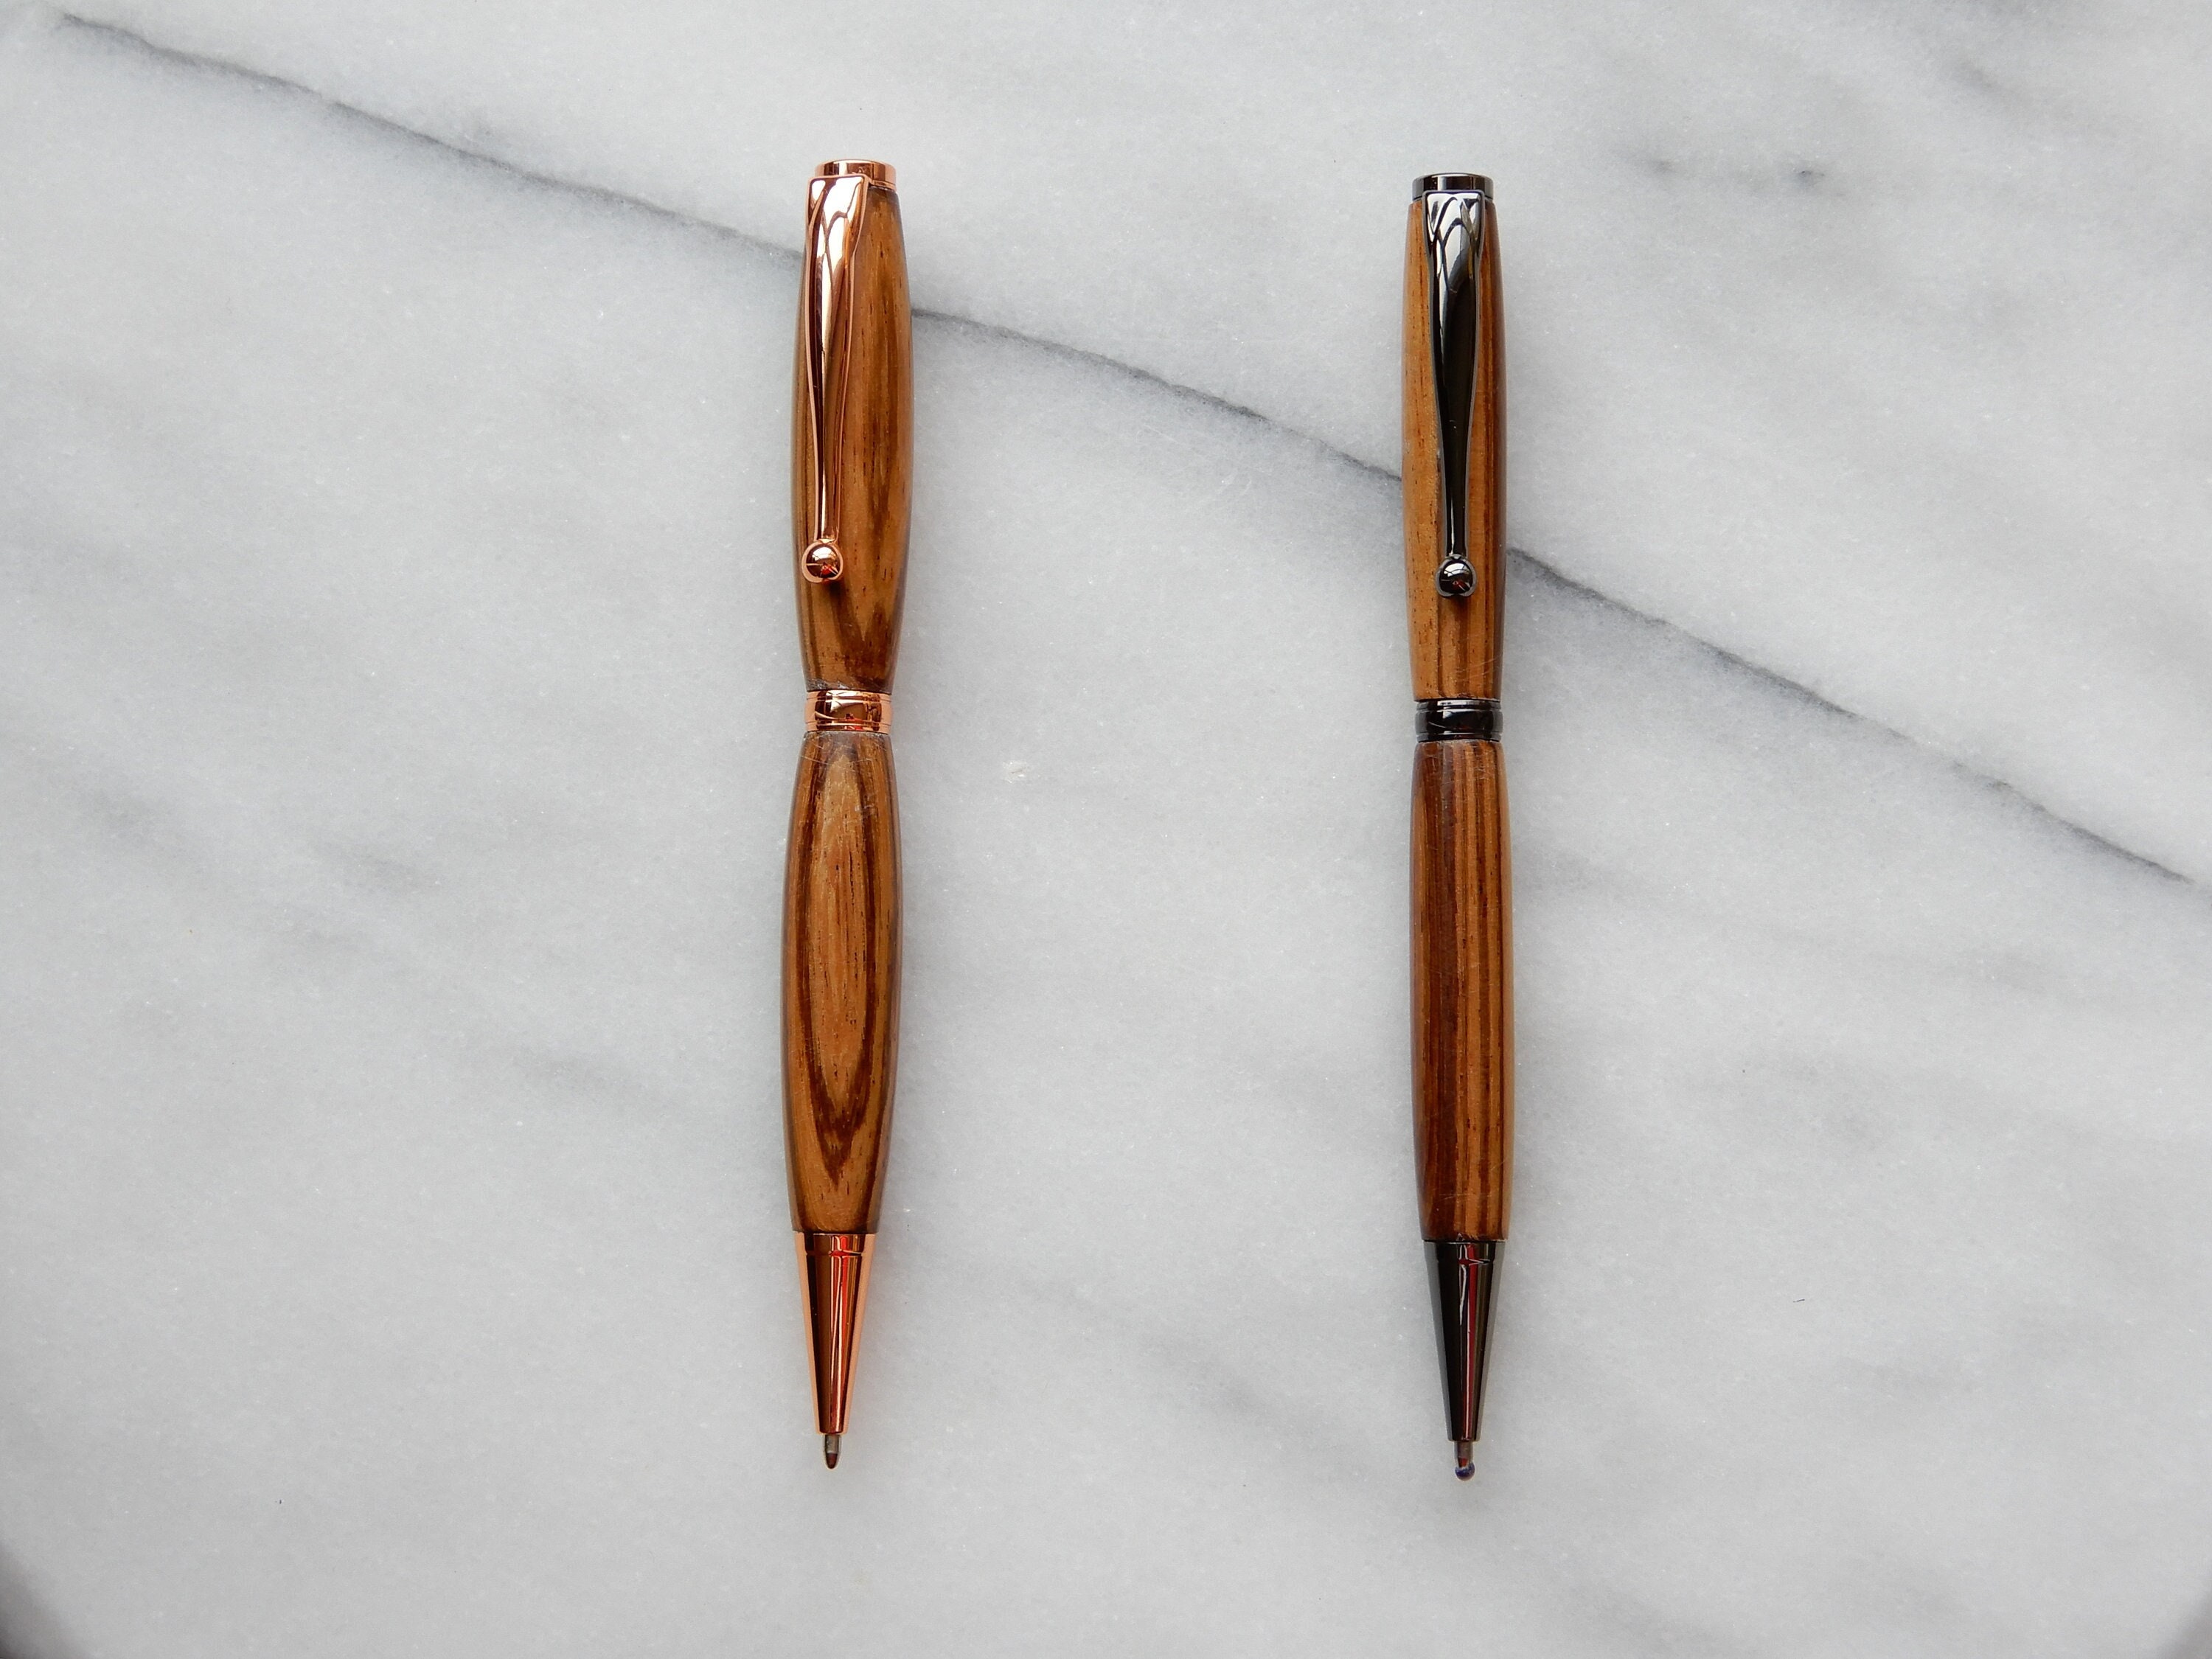 Slimline Turned Wood Pens